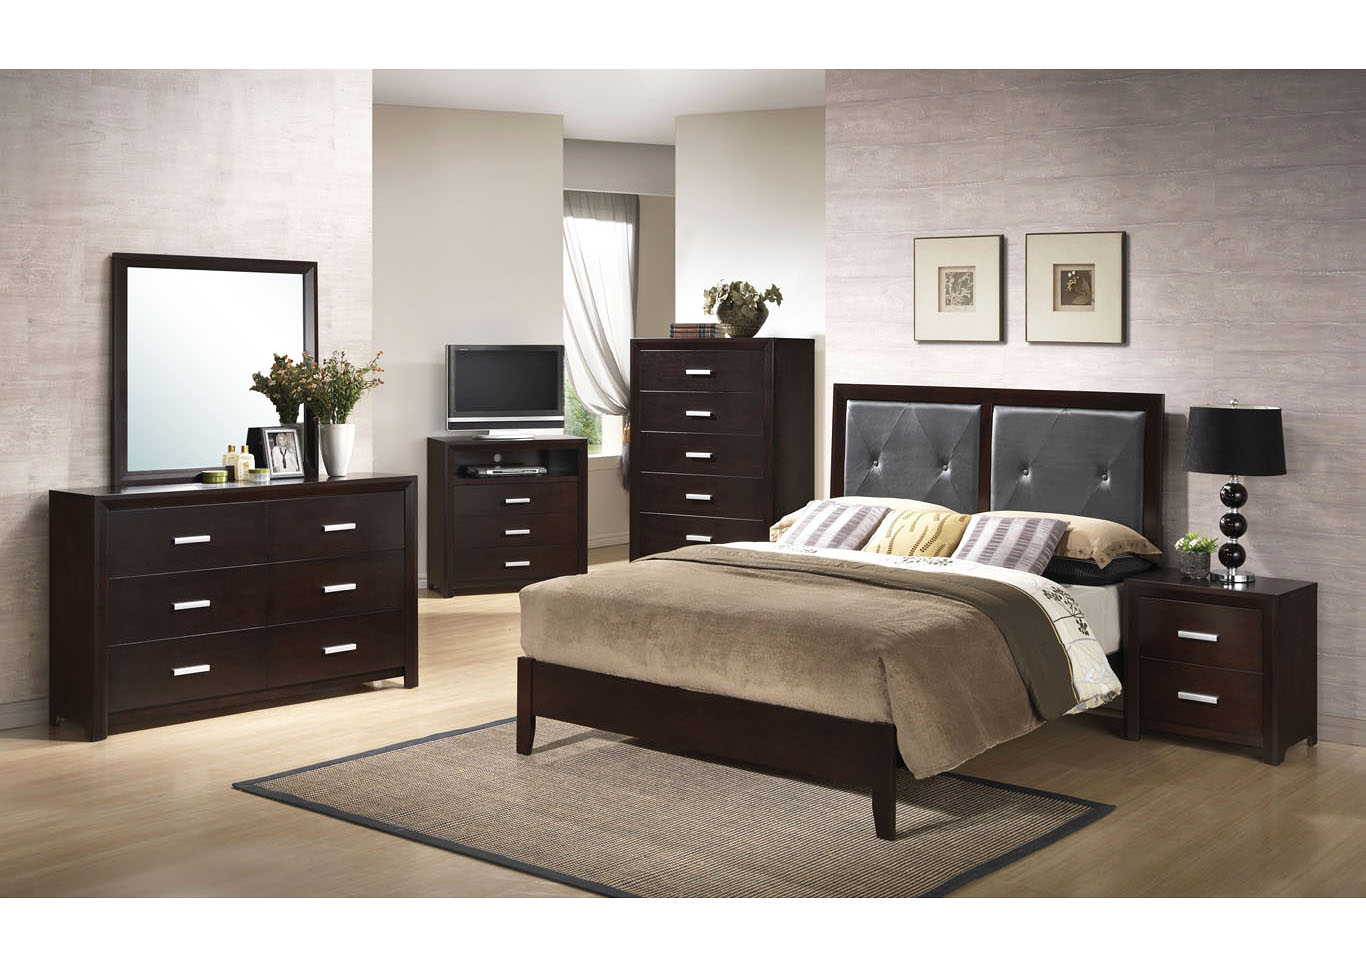 Cappuccino Panel Queen 5 Piece Bedroom Set W/ Nightstand, Chest, Dresser & Mirror,Global Trading